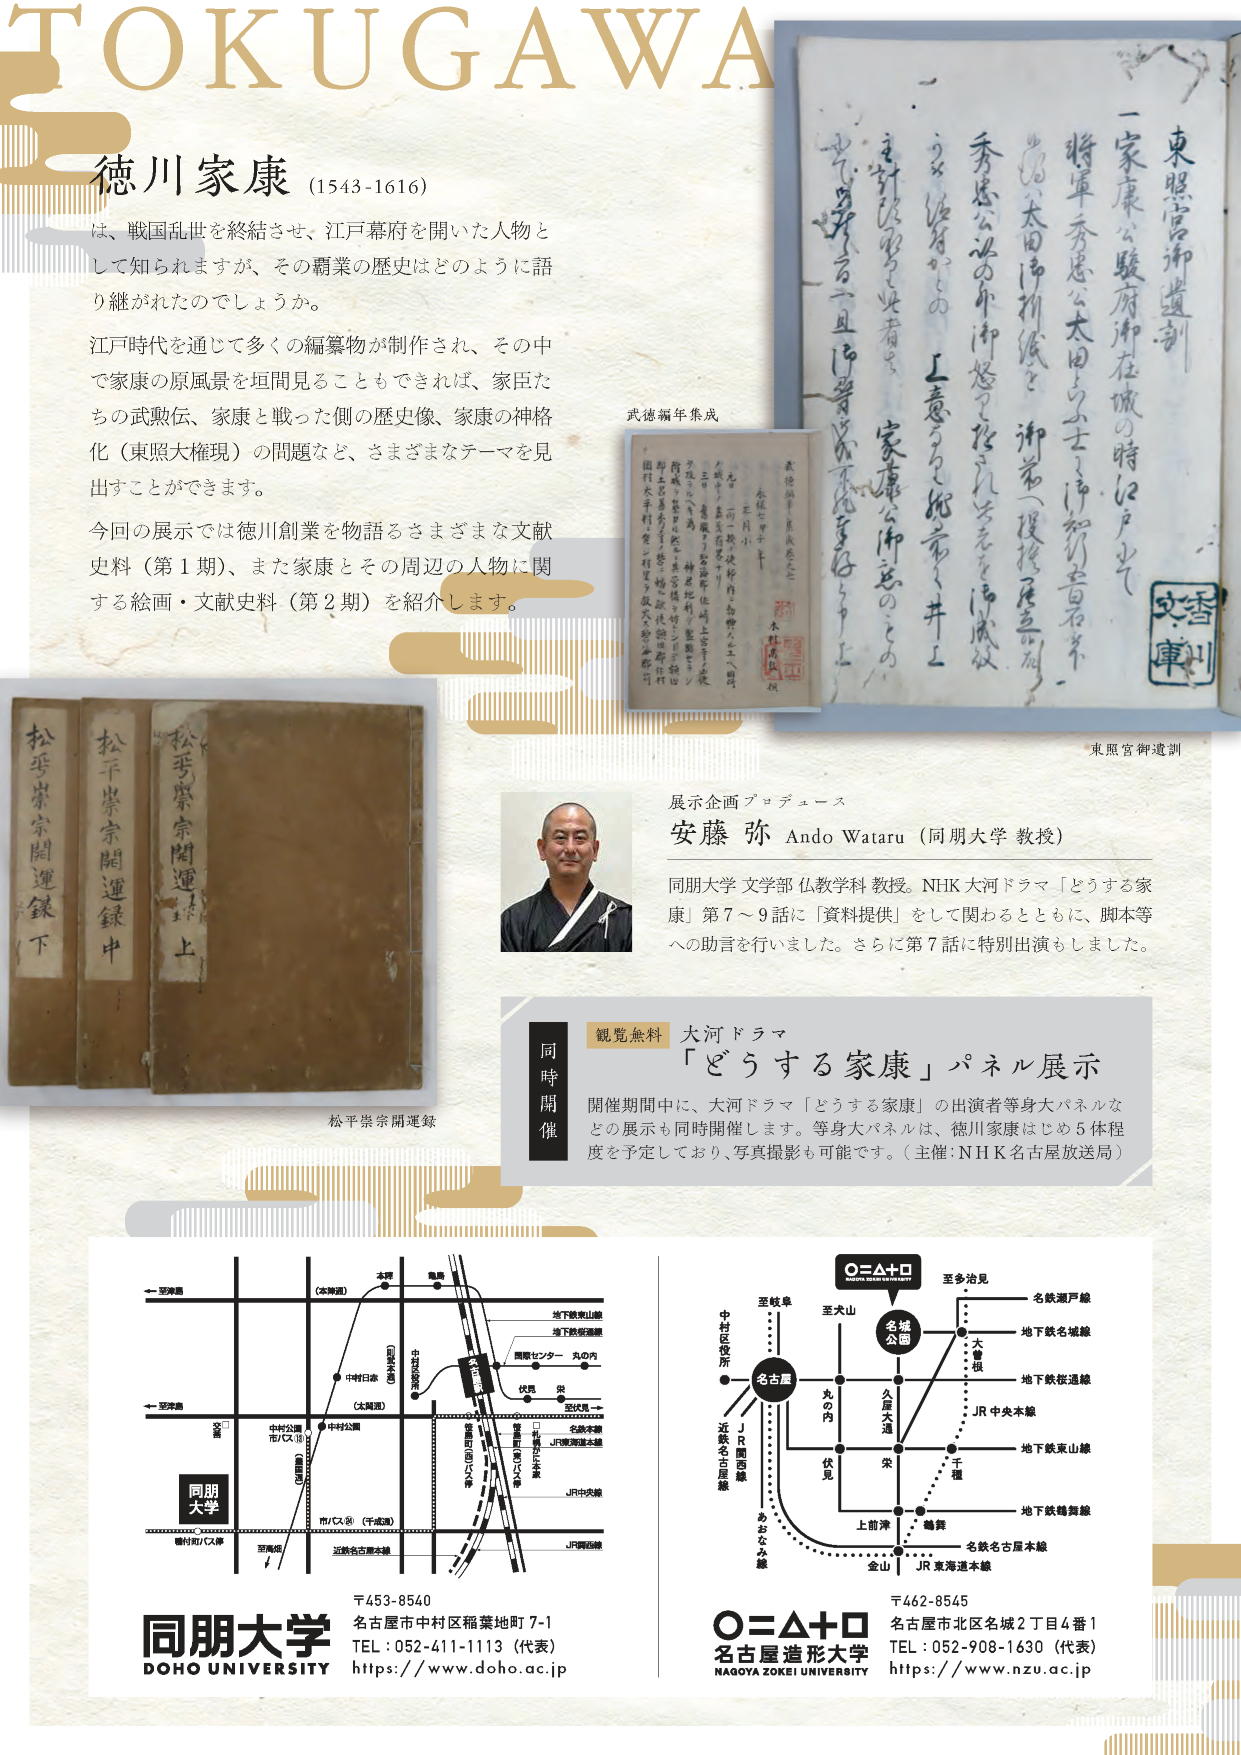 2徳川創業史料の世界 修正0620 compressed ページ 2